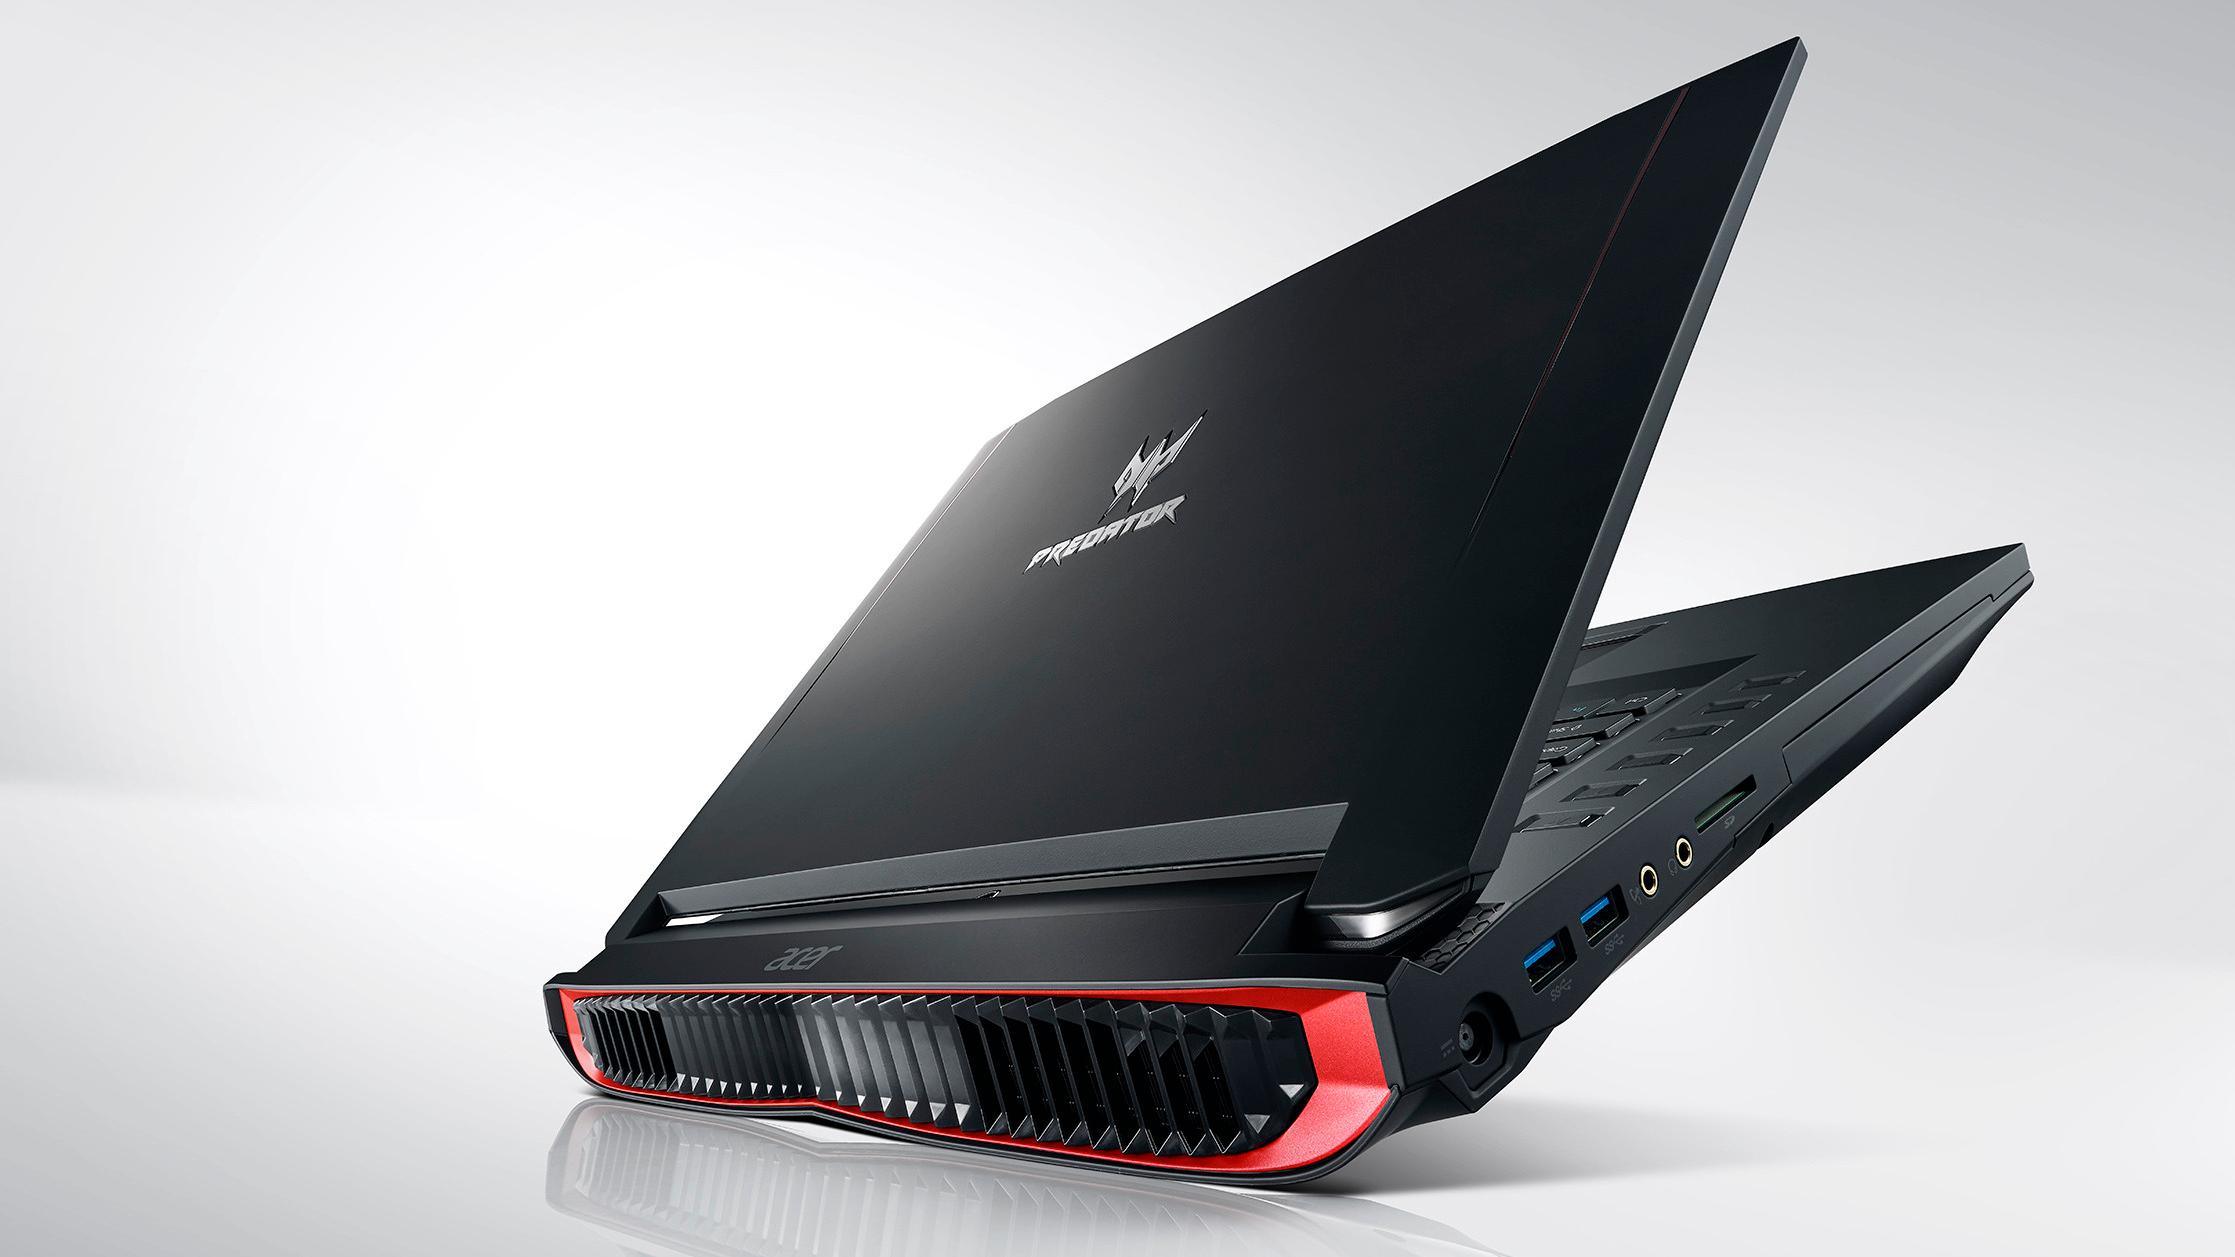 Acers nye spillmaskin skal være så rå at hele baksiden er dedikert til lufting